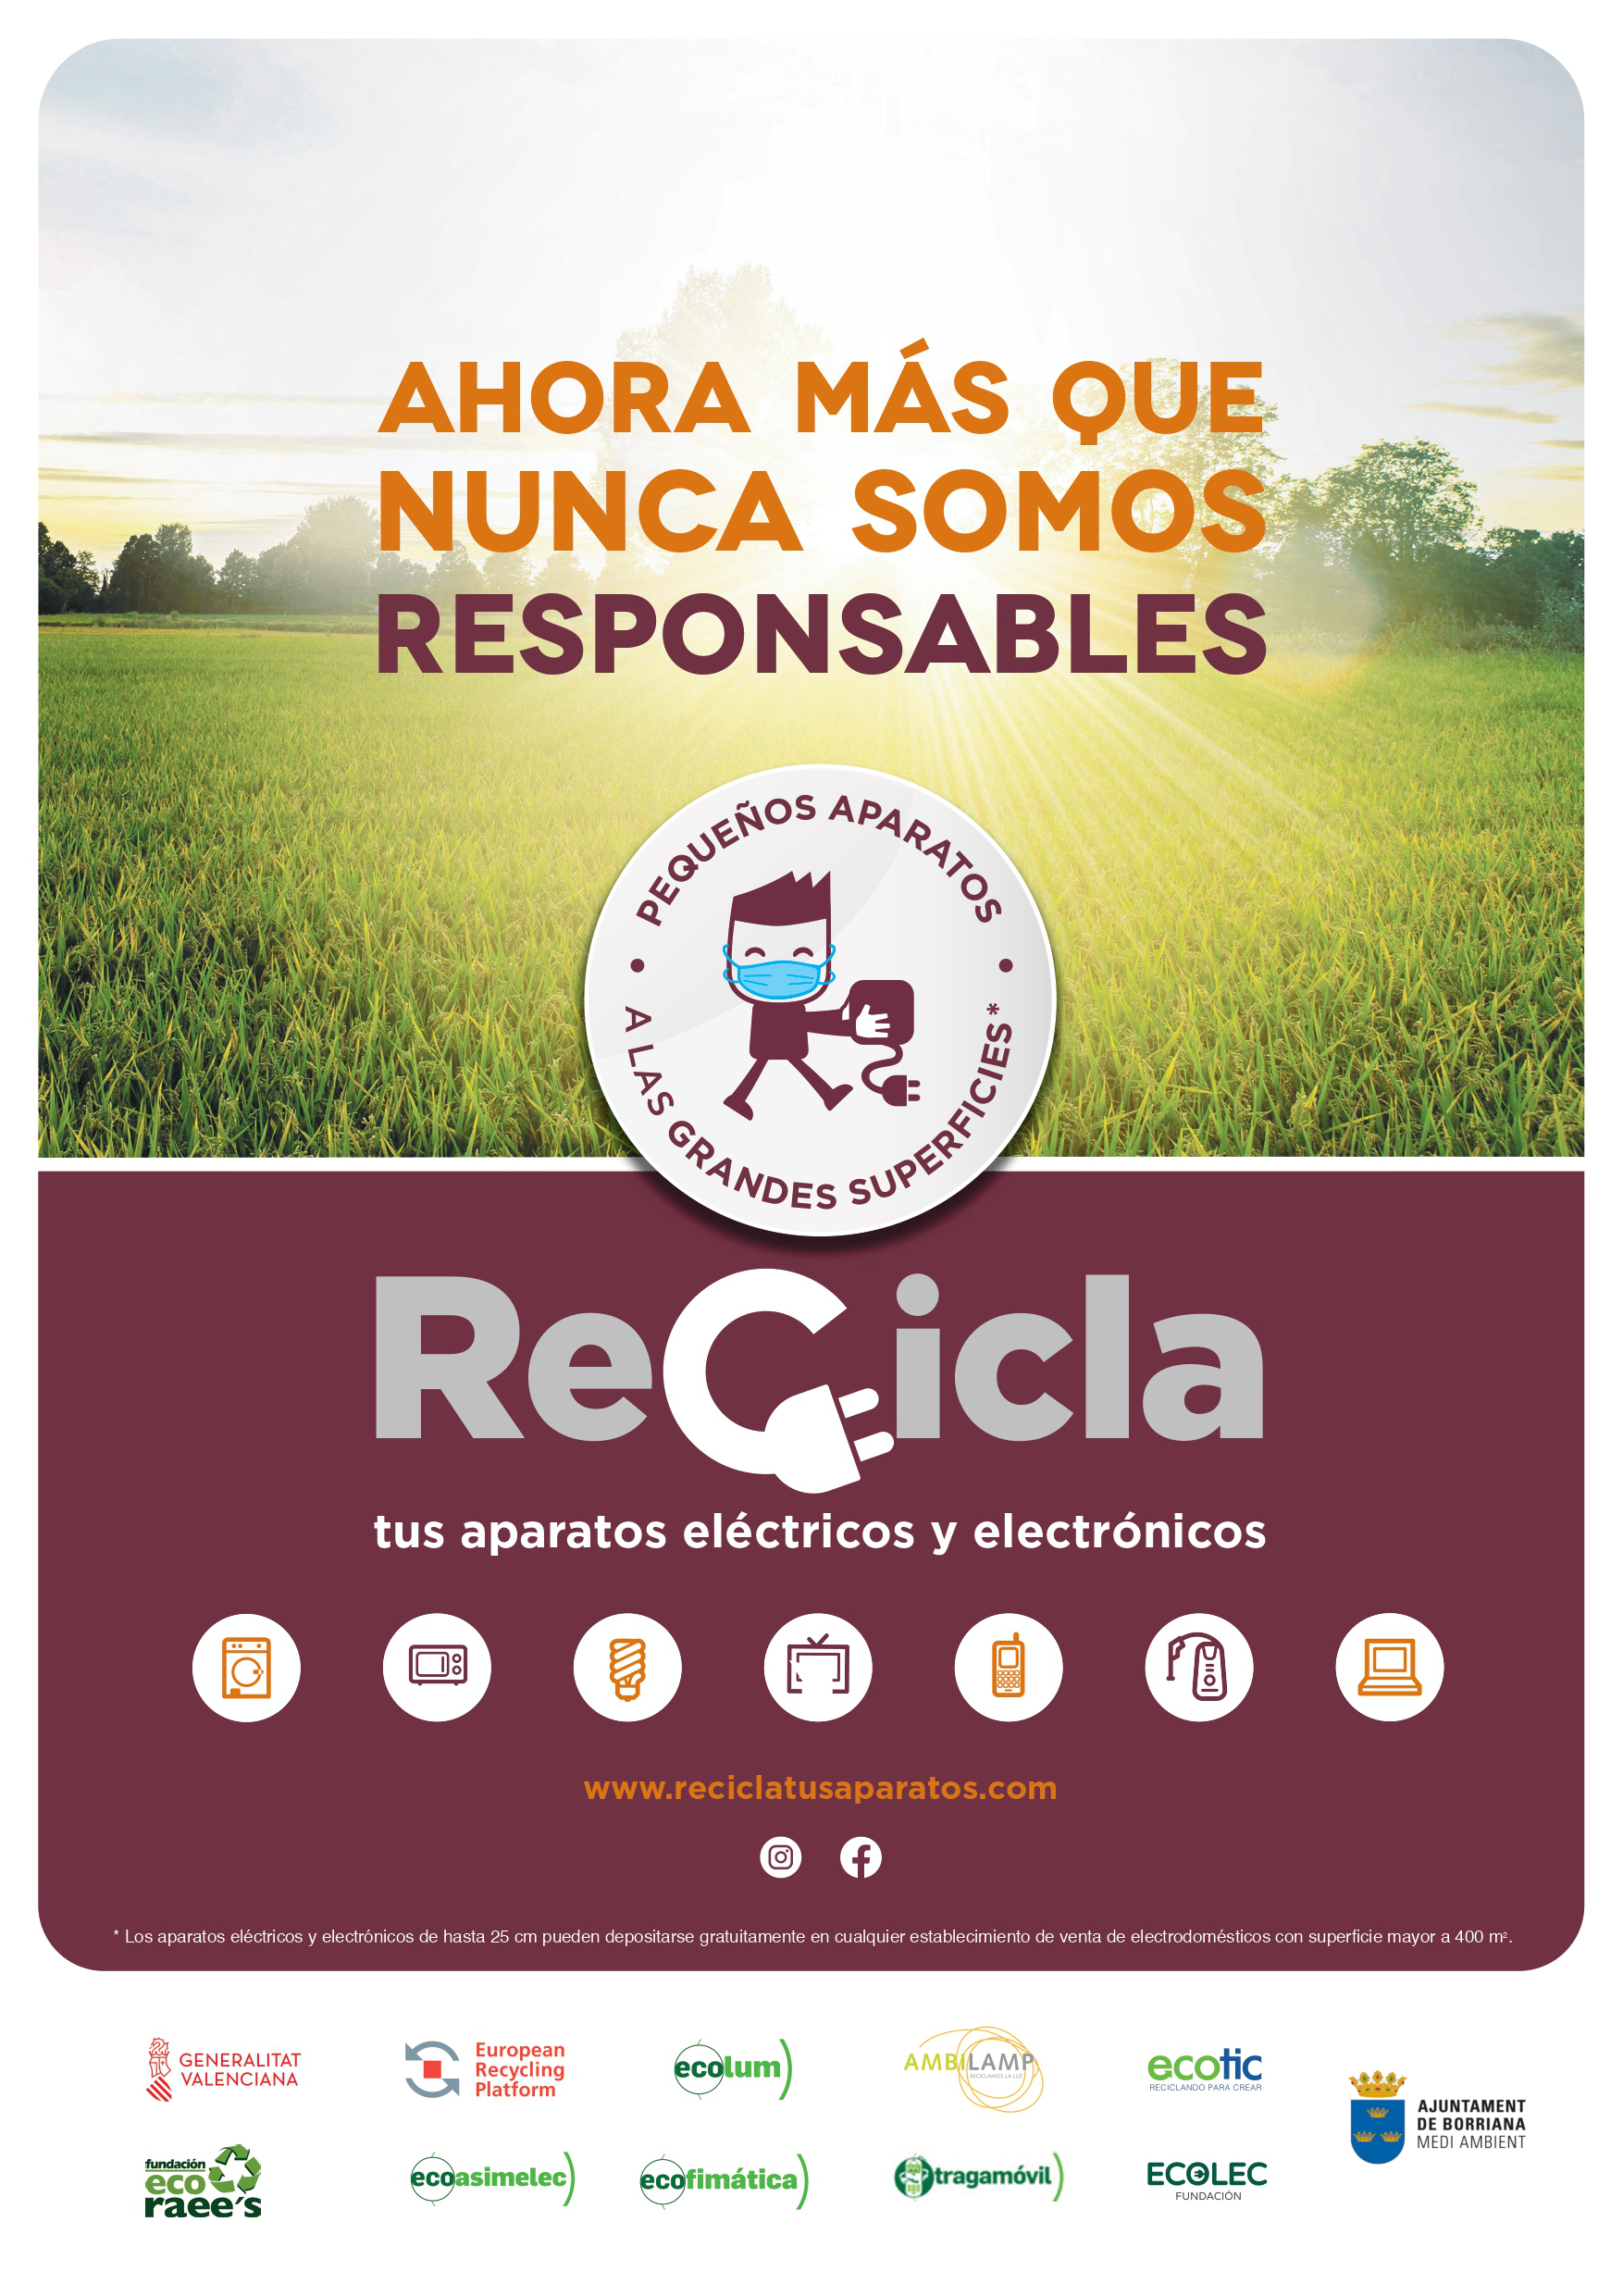 La campaña ‘Recicla tus aparatos’ inaugura nueva edición en Burriana